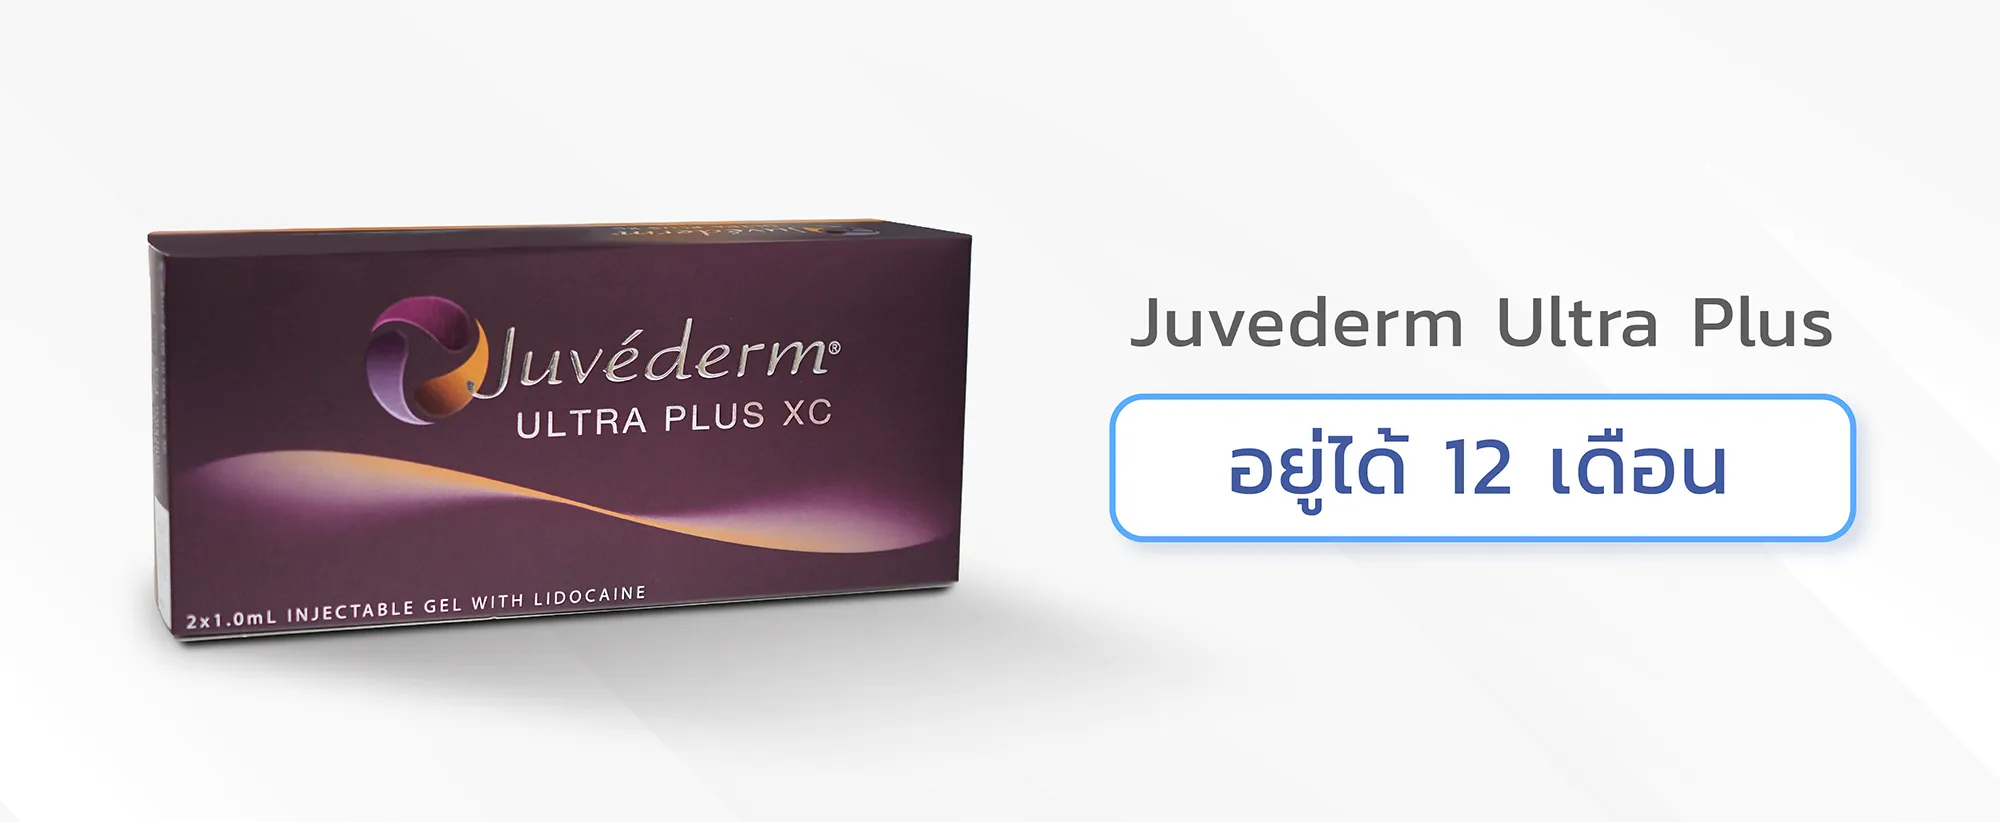 ราคาฟิลเลอร์ปากJuvederm Ultra Plus